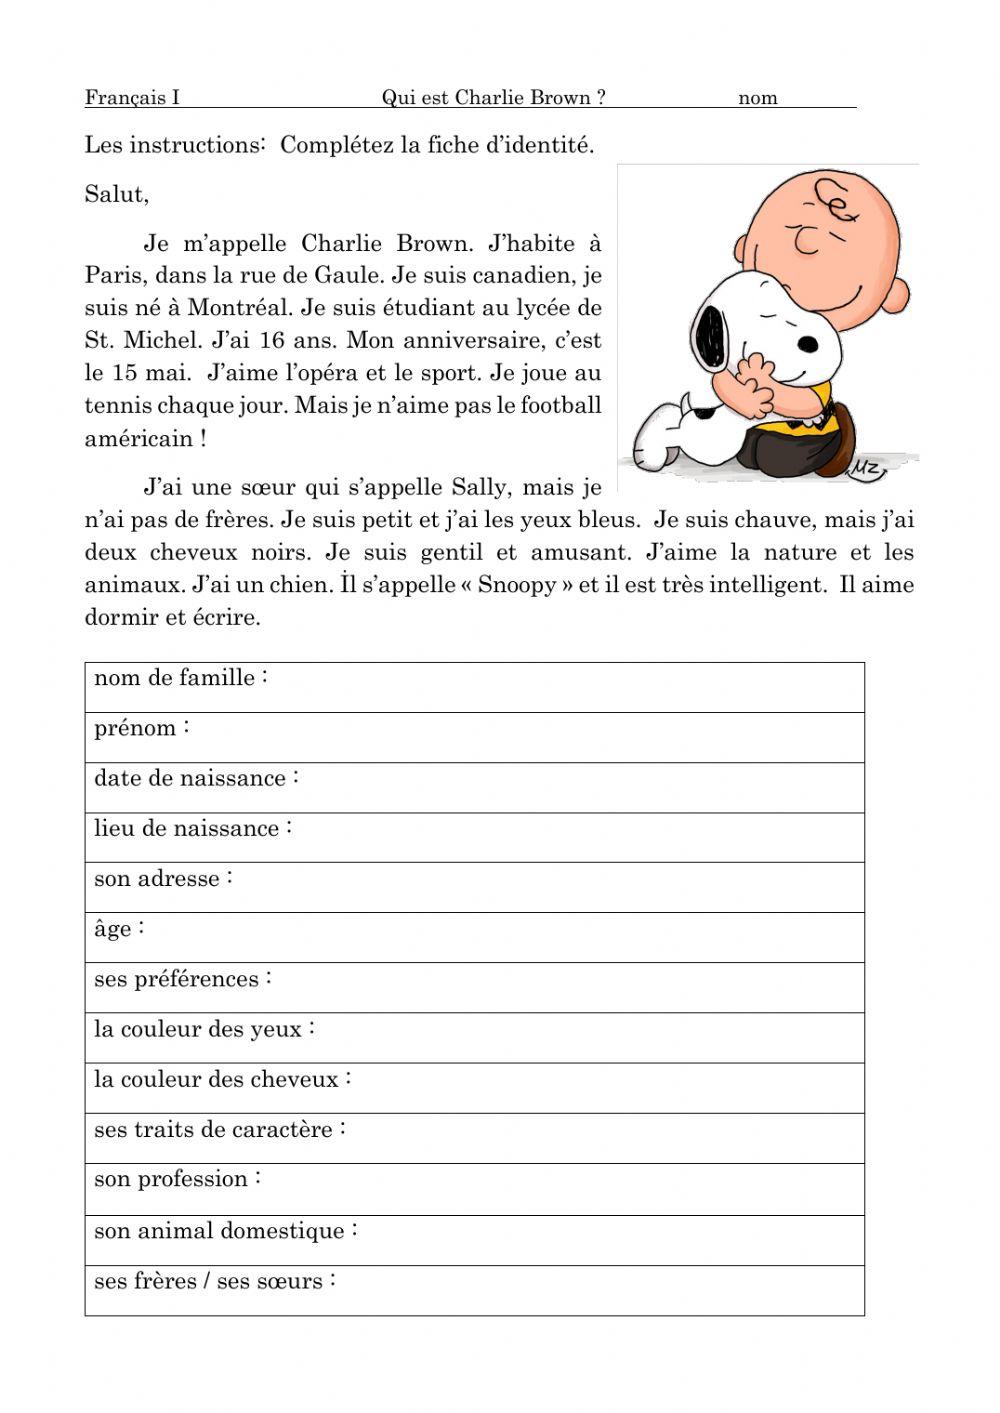 L'identité de Charlie Brown